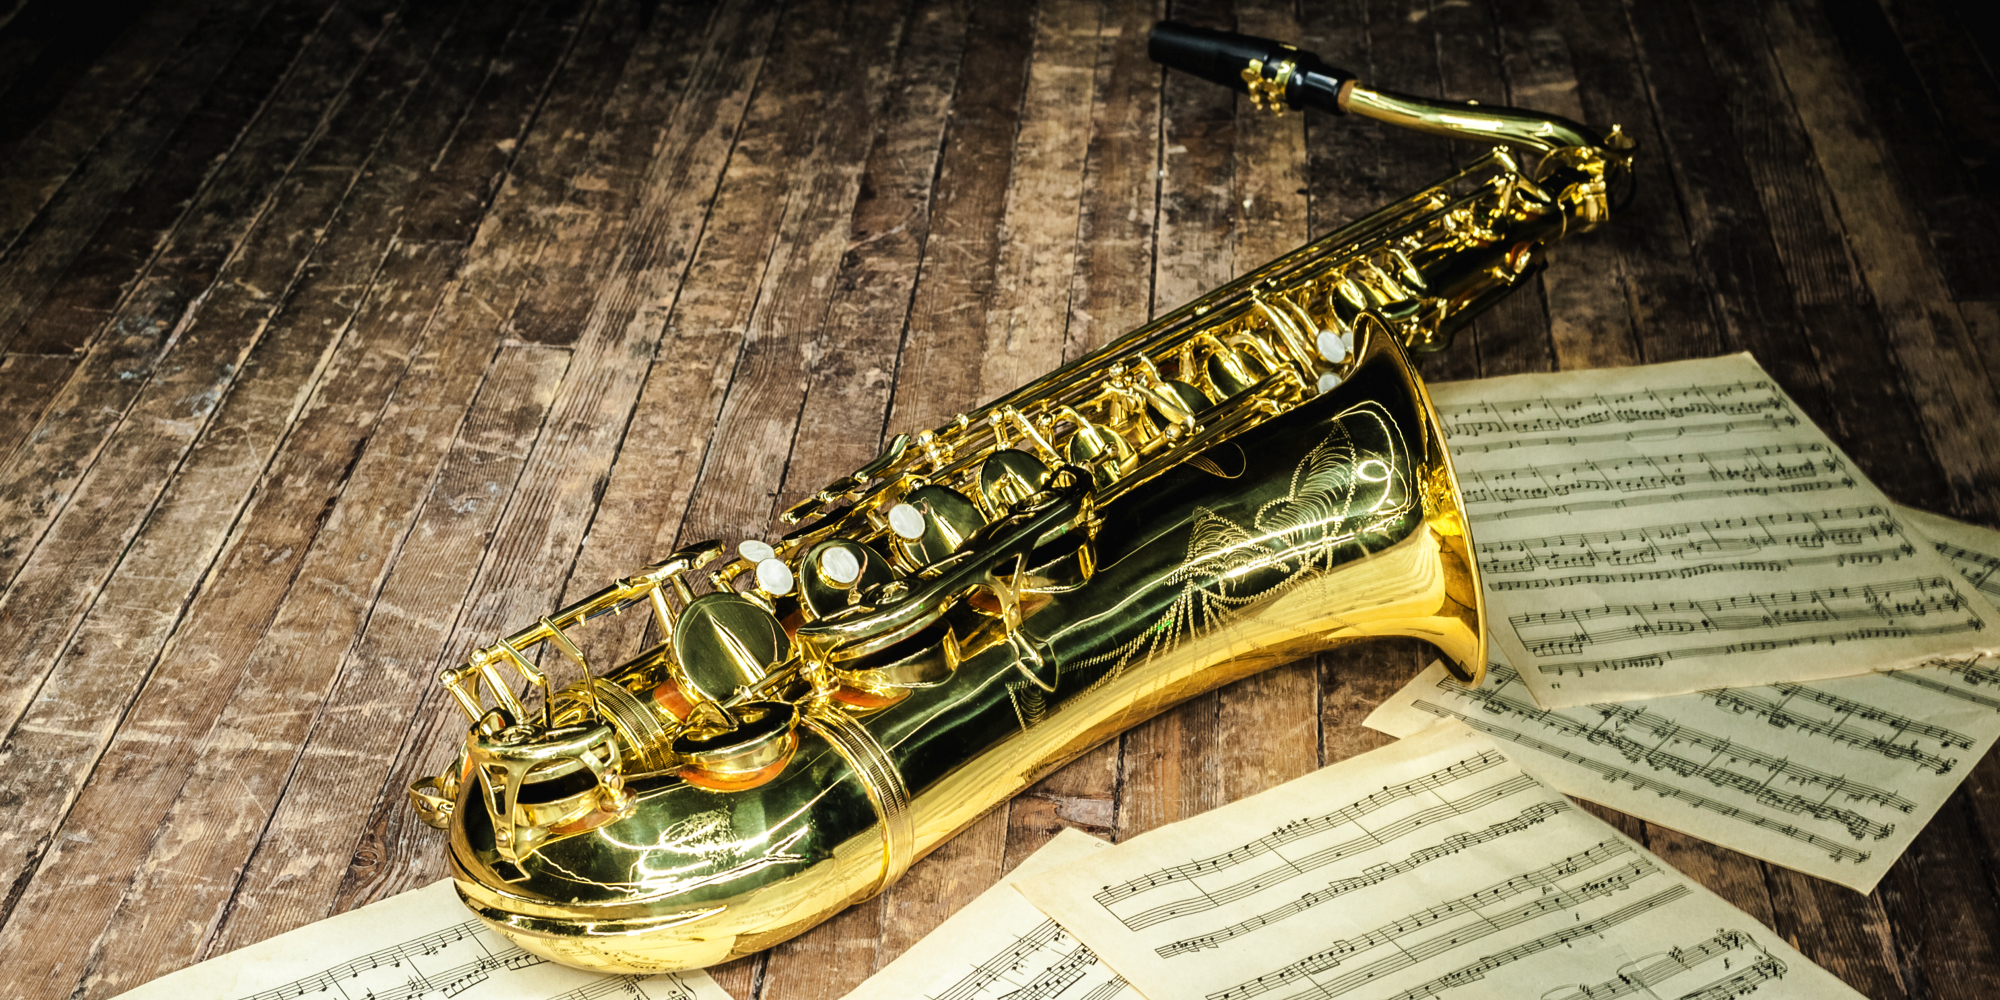 saxofon saxofonspil musik undervisning musikundervisning